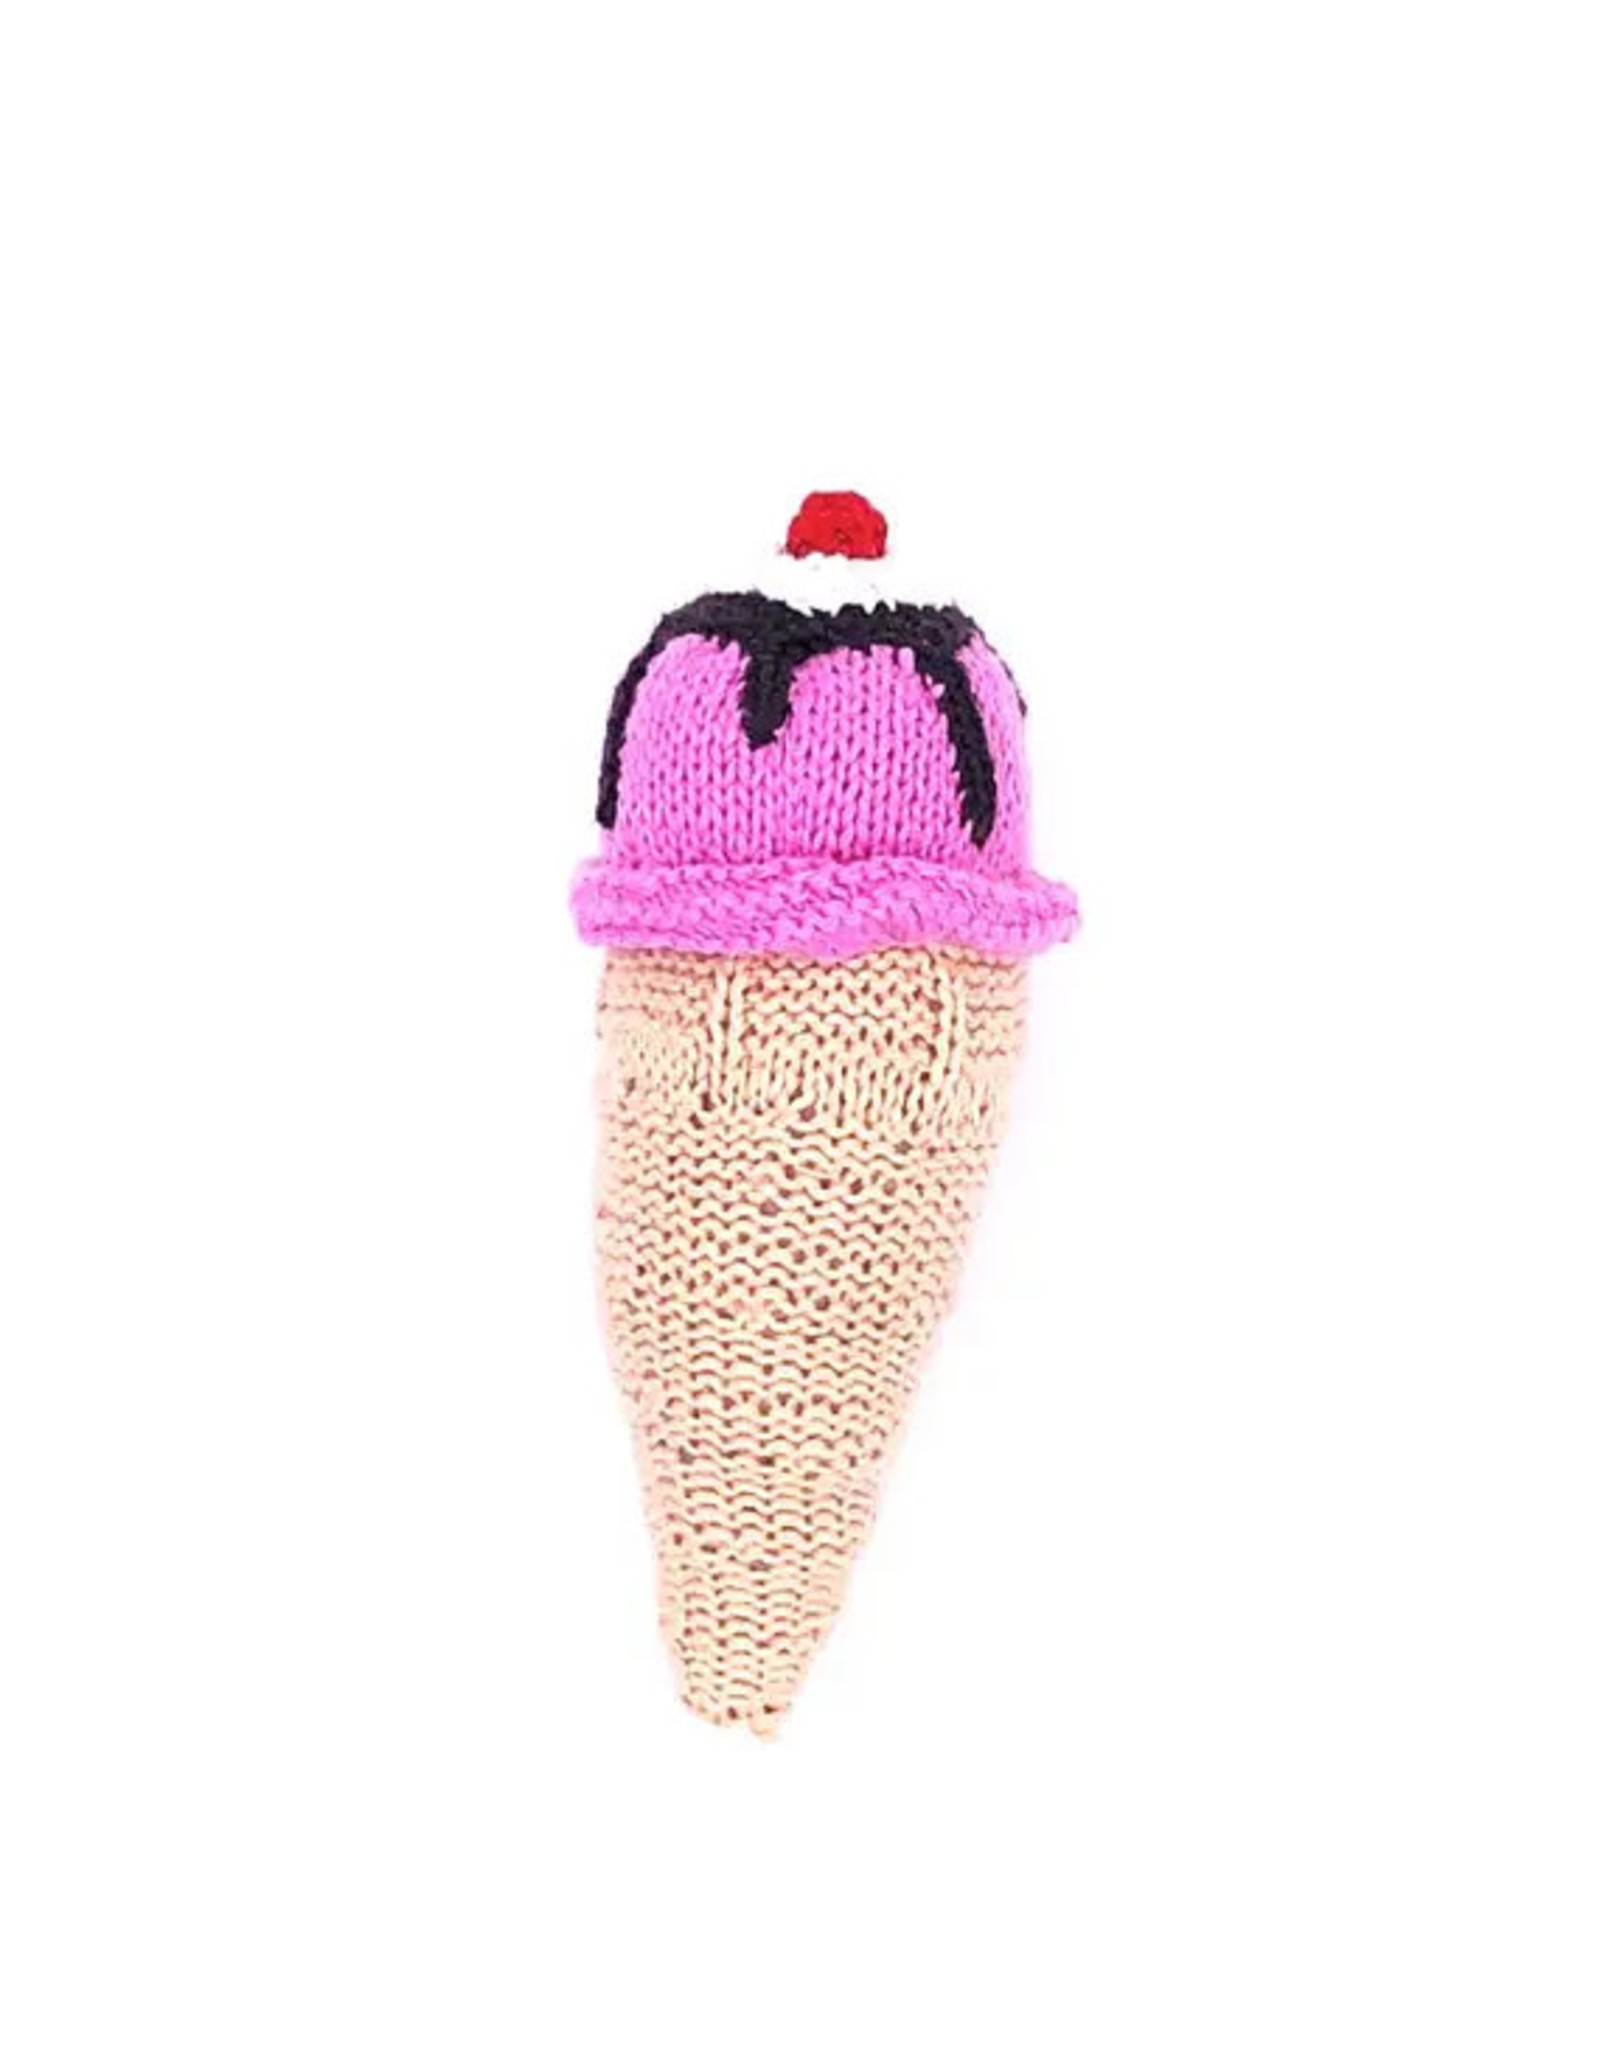 Pebble Strawberry Ice Cream Cone Rattle